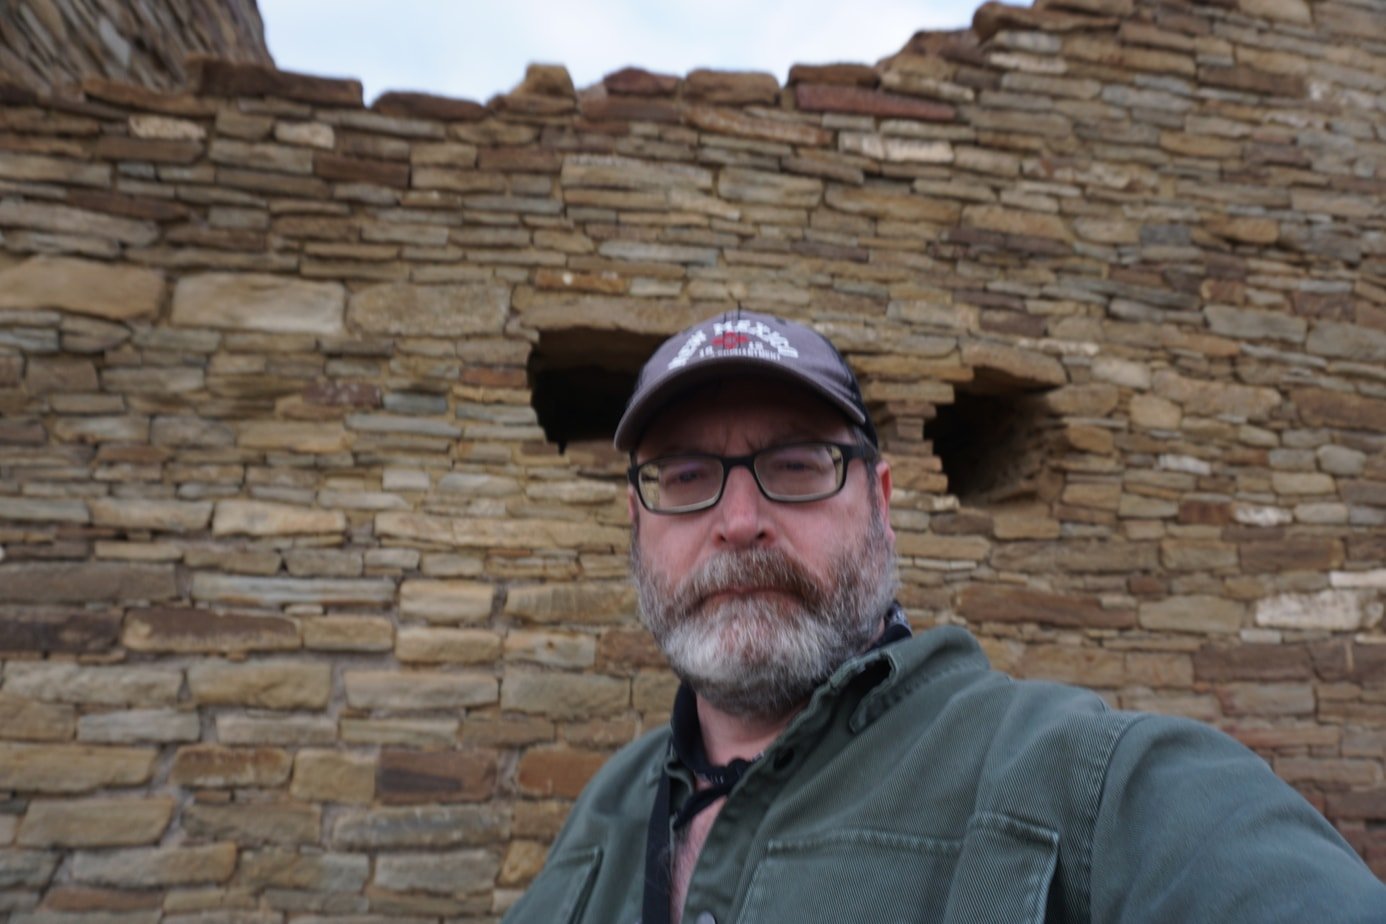 John Gentry at Parque Histórico Nacional de la Cultura Chaco Ruinas de Pueblo Bonito tendencias de viajes